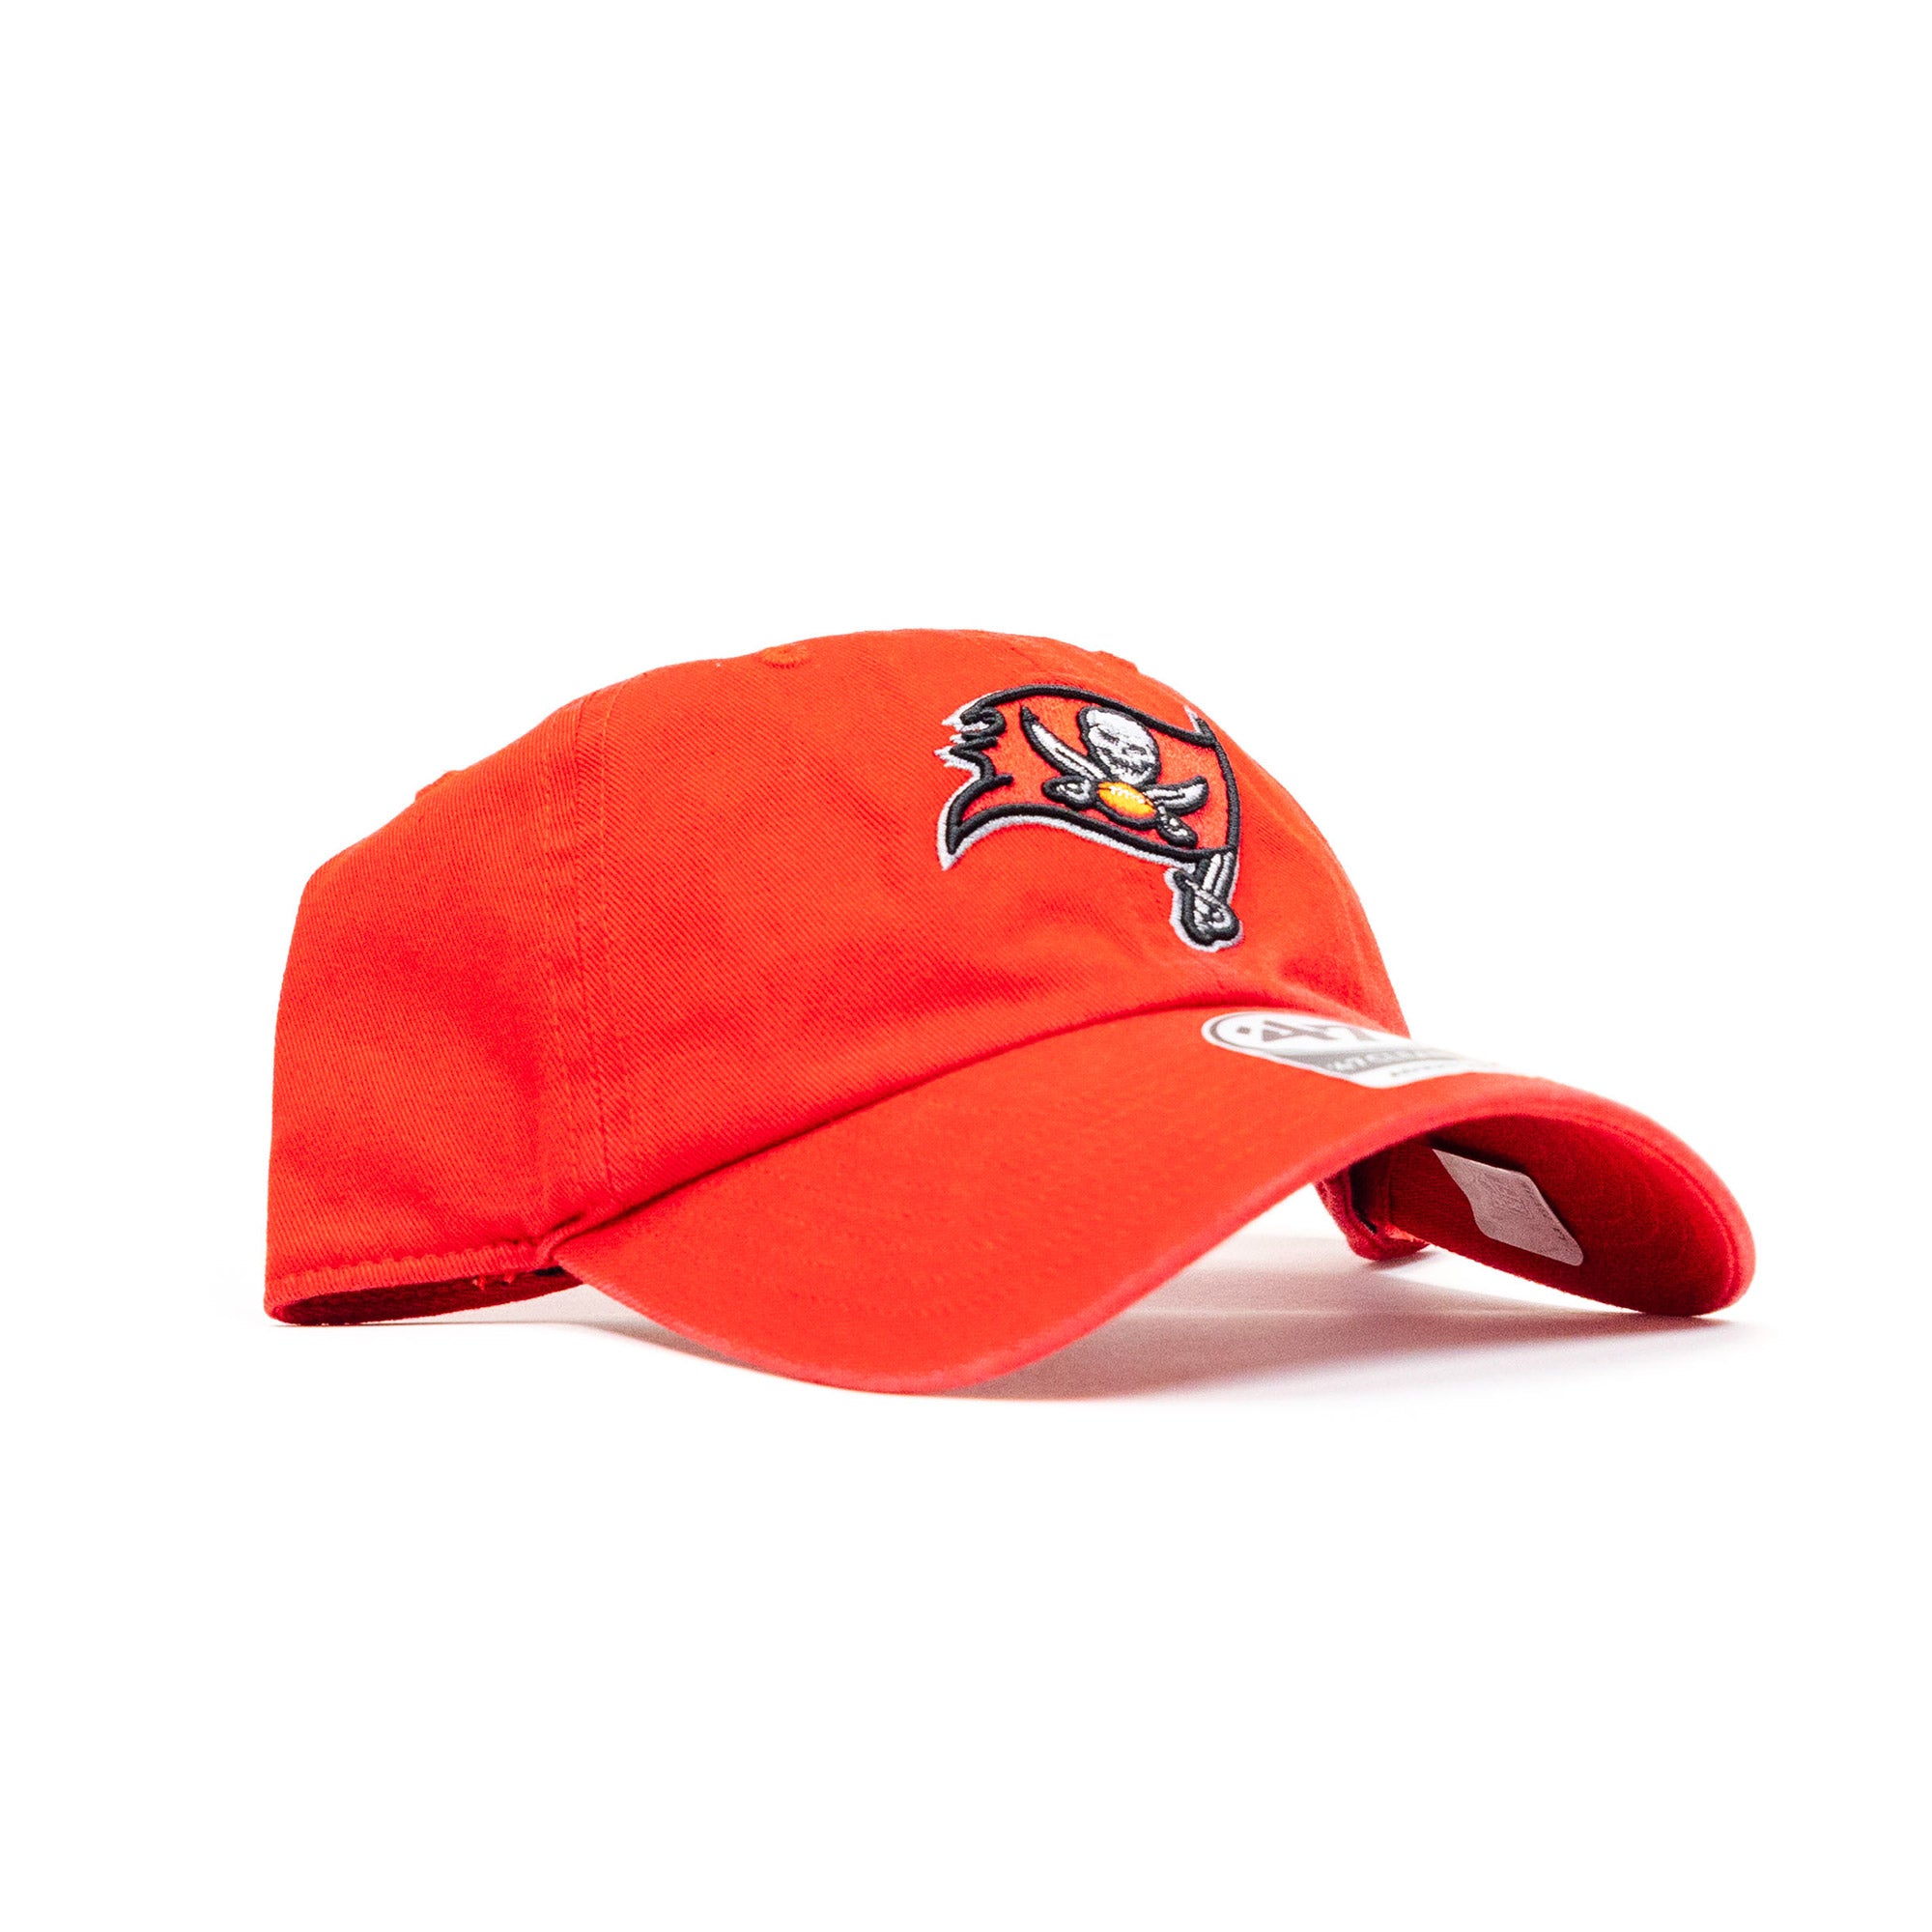 Tampa Bay Lightning '47 Brand Clean Up Adjustable Hat